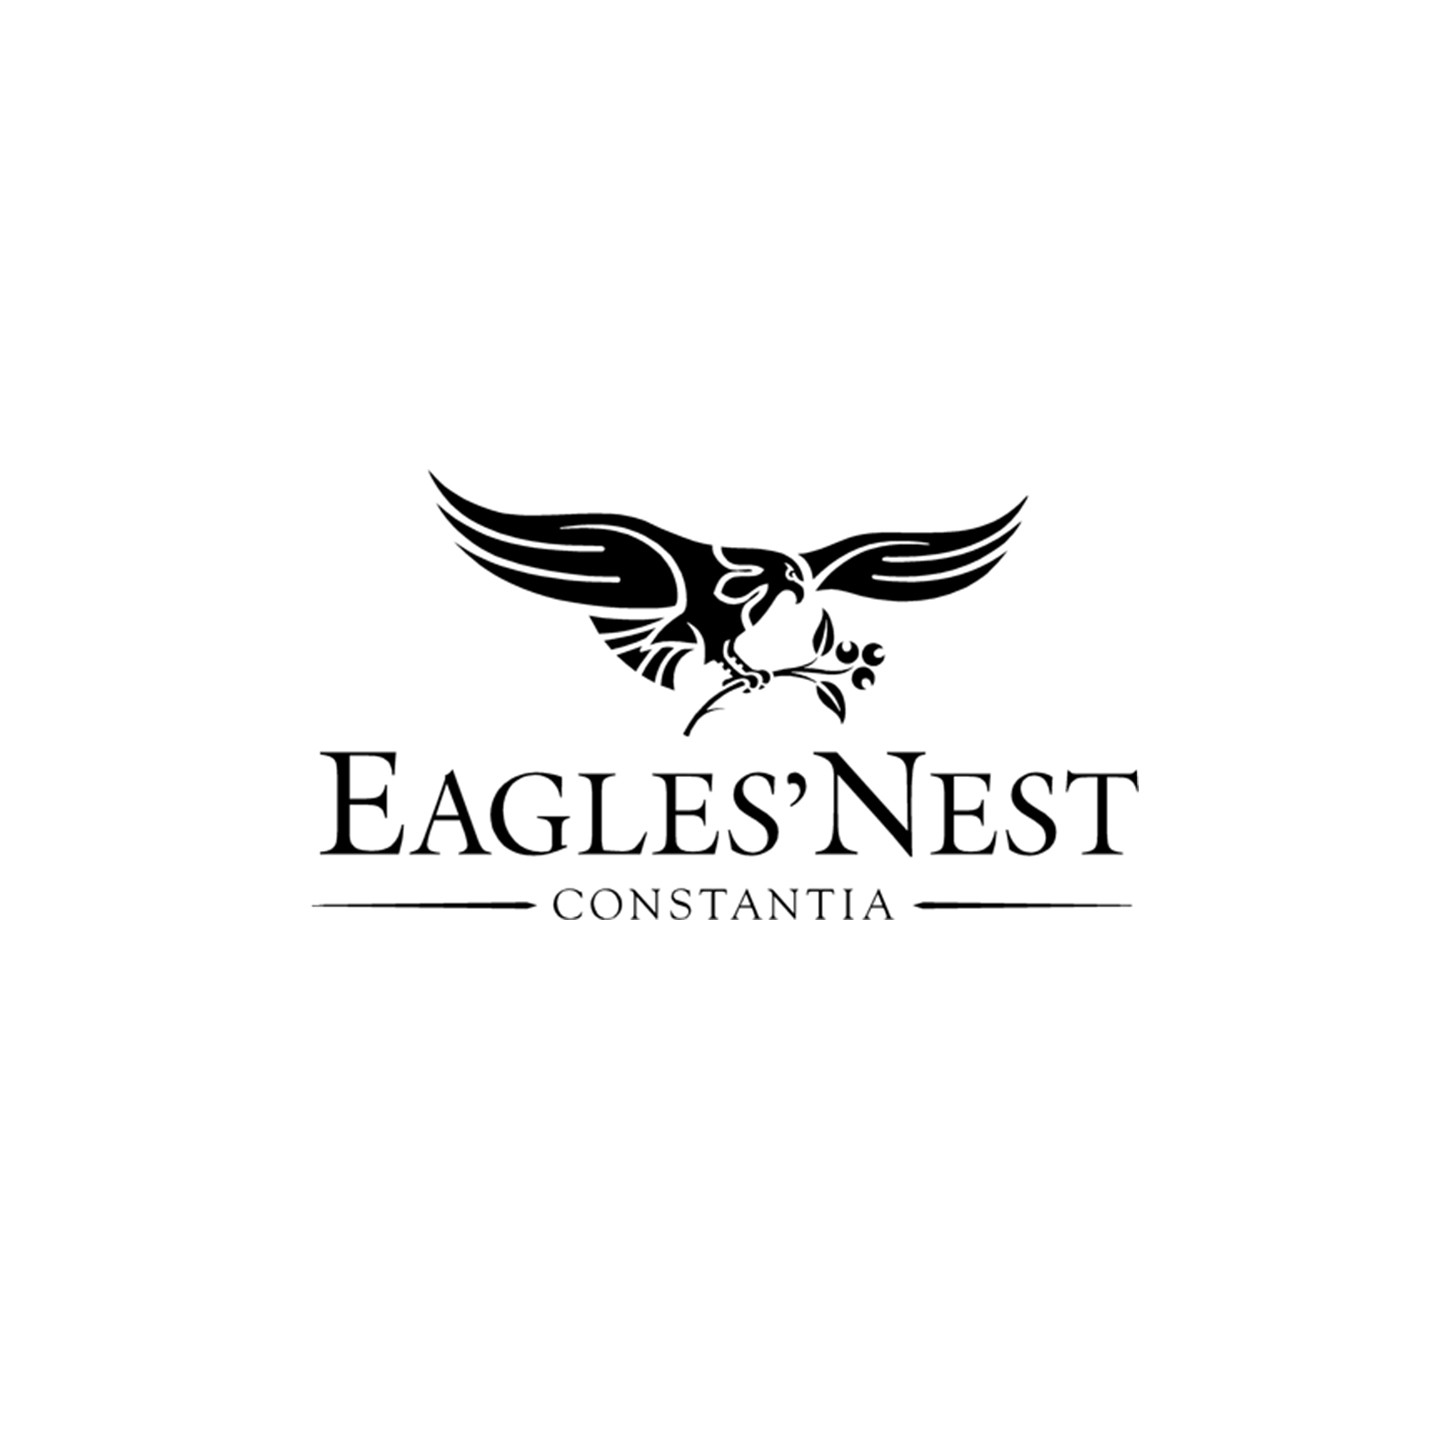 Eagles Nest | Constantia